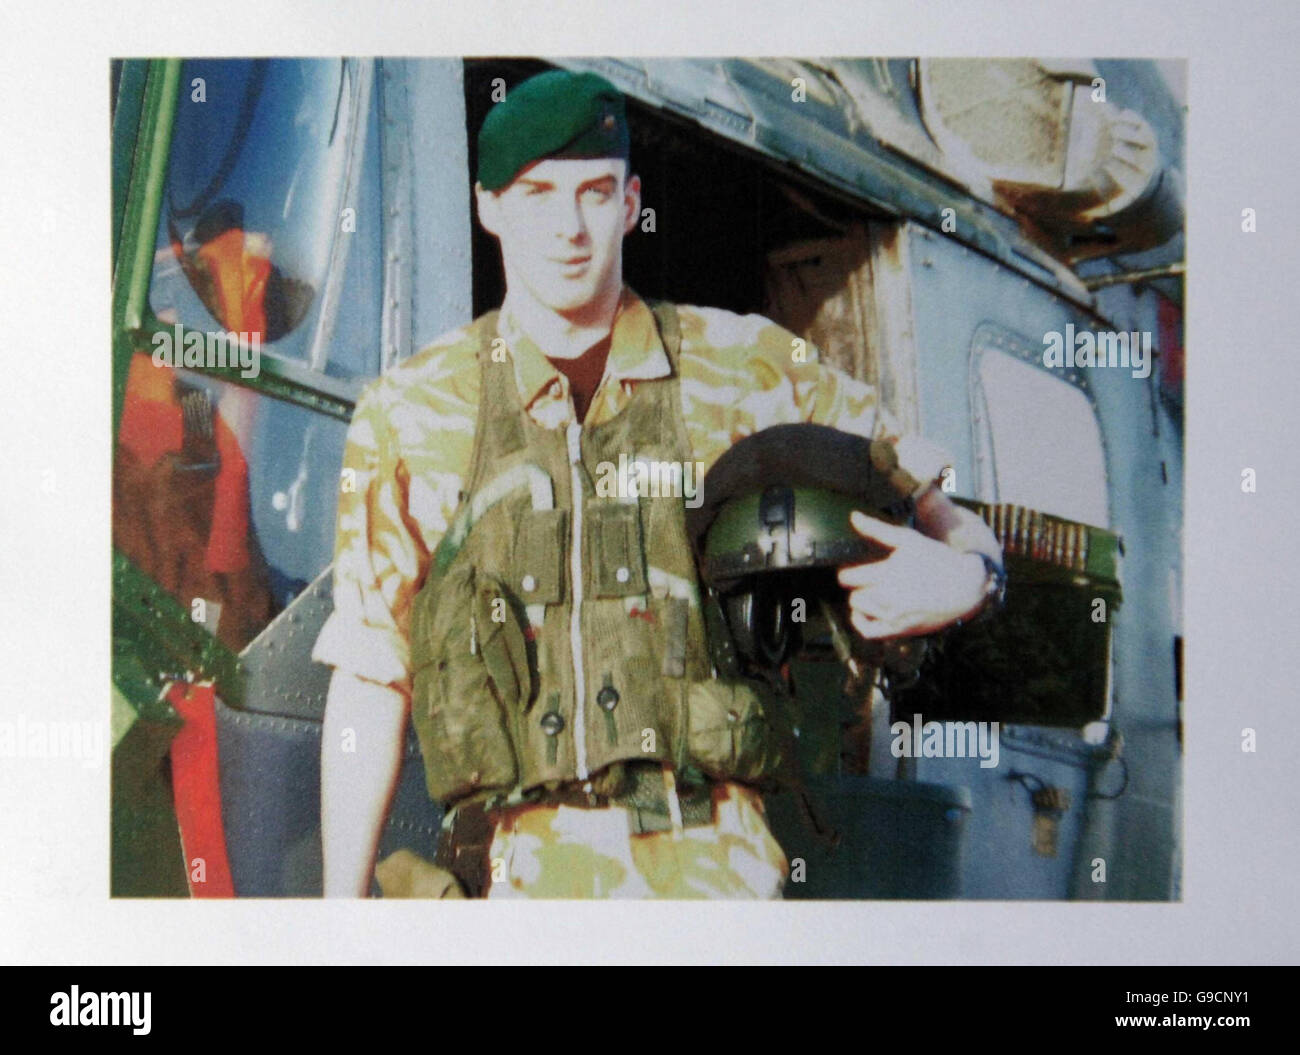 Foto von Royal Marine Paul Collins, der mit vier anderen bei einem militärischen Hubschrauberabsturz im Irak starb, wie es heute auf seinem Dienstbefehl bei seiner Beerdigung im Commando Training Center, Lympstone, Devon, zu sehen ist. Stockfoto